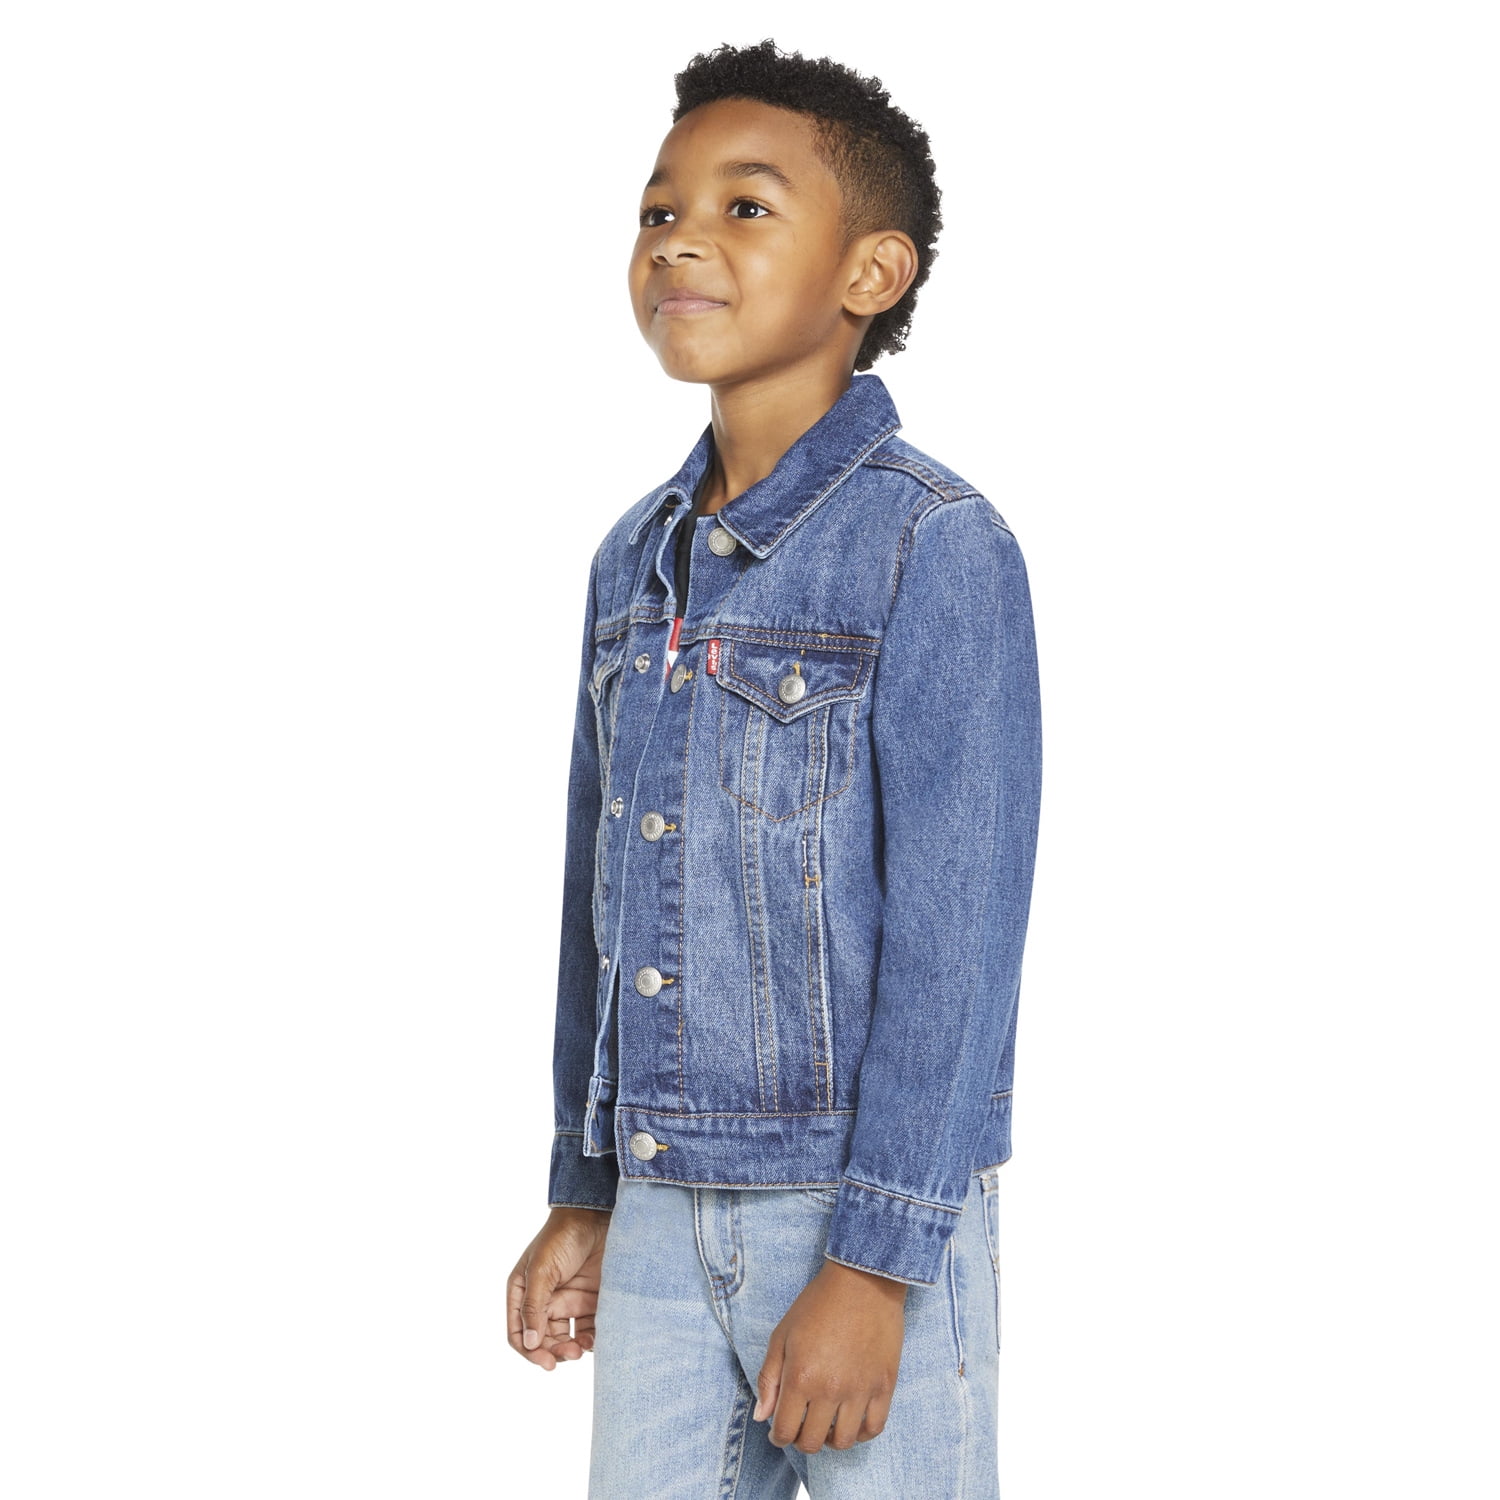 Kids Custom Levi's Denim Jacket | Little Chicken Kids Clothing 3T / Dark Wash Denim